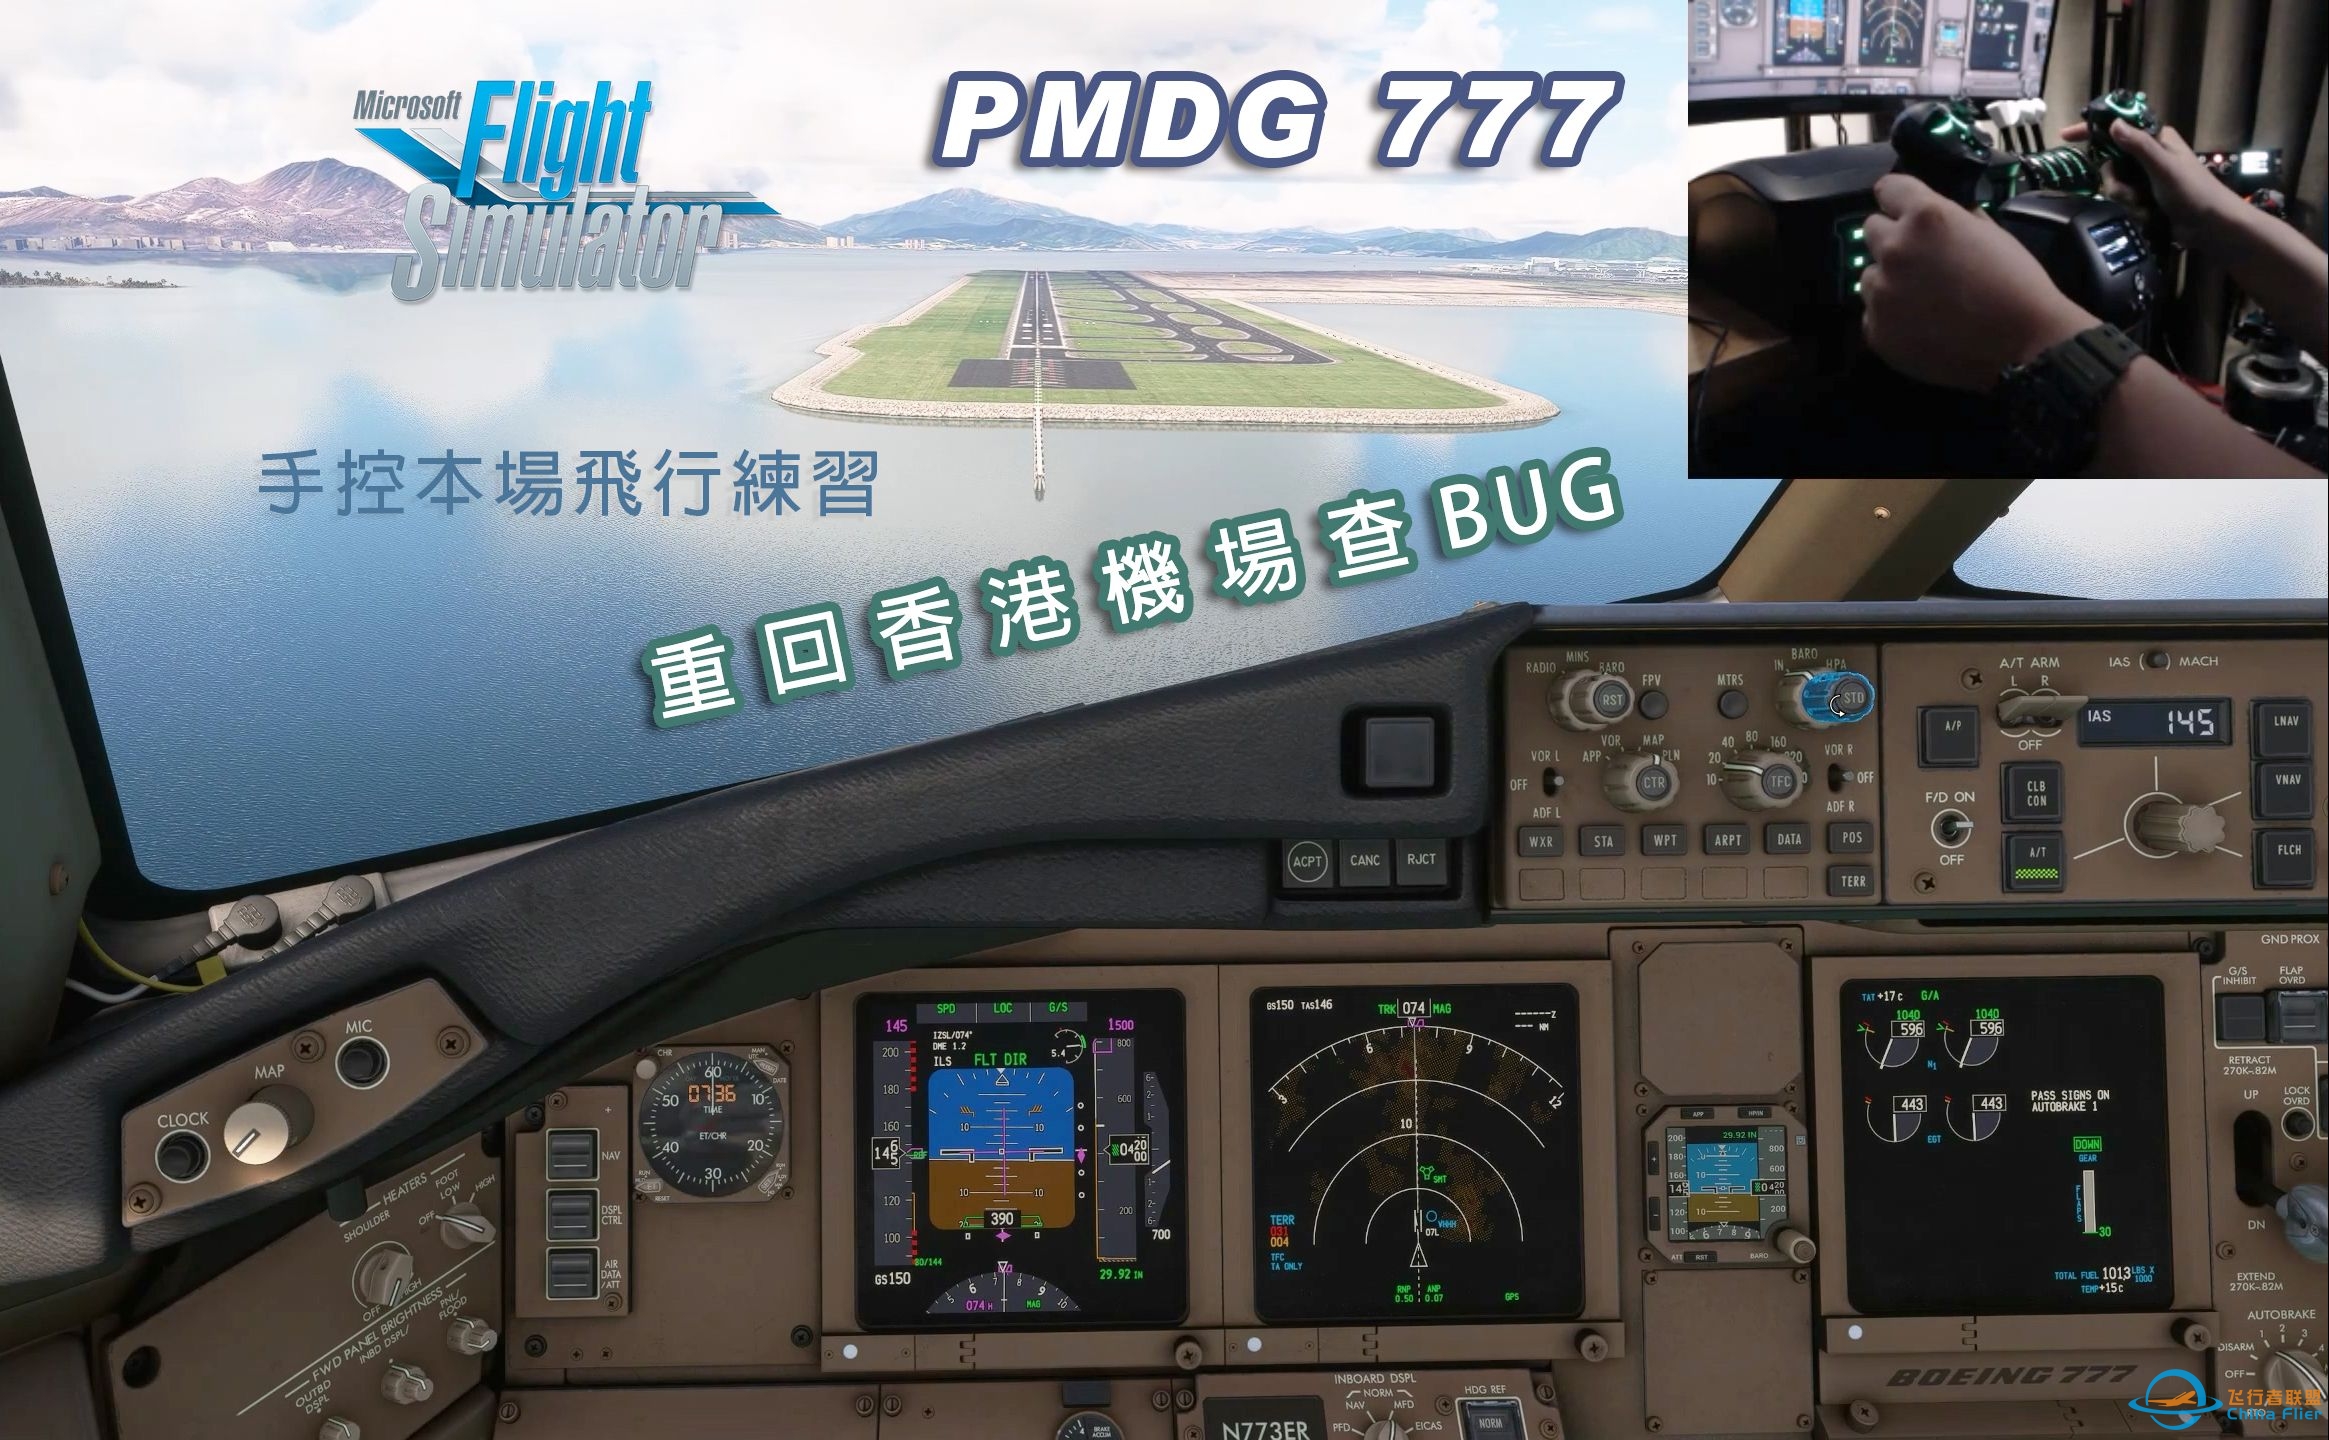 微软飞行模拟 PMDG 777 手控本场飞行练习 (驾驭 Fly-By-Wire)-8088 